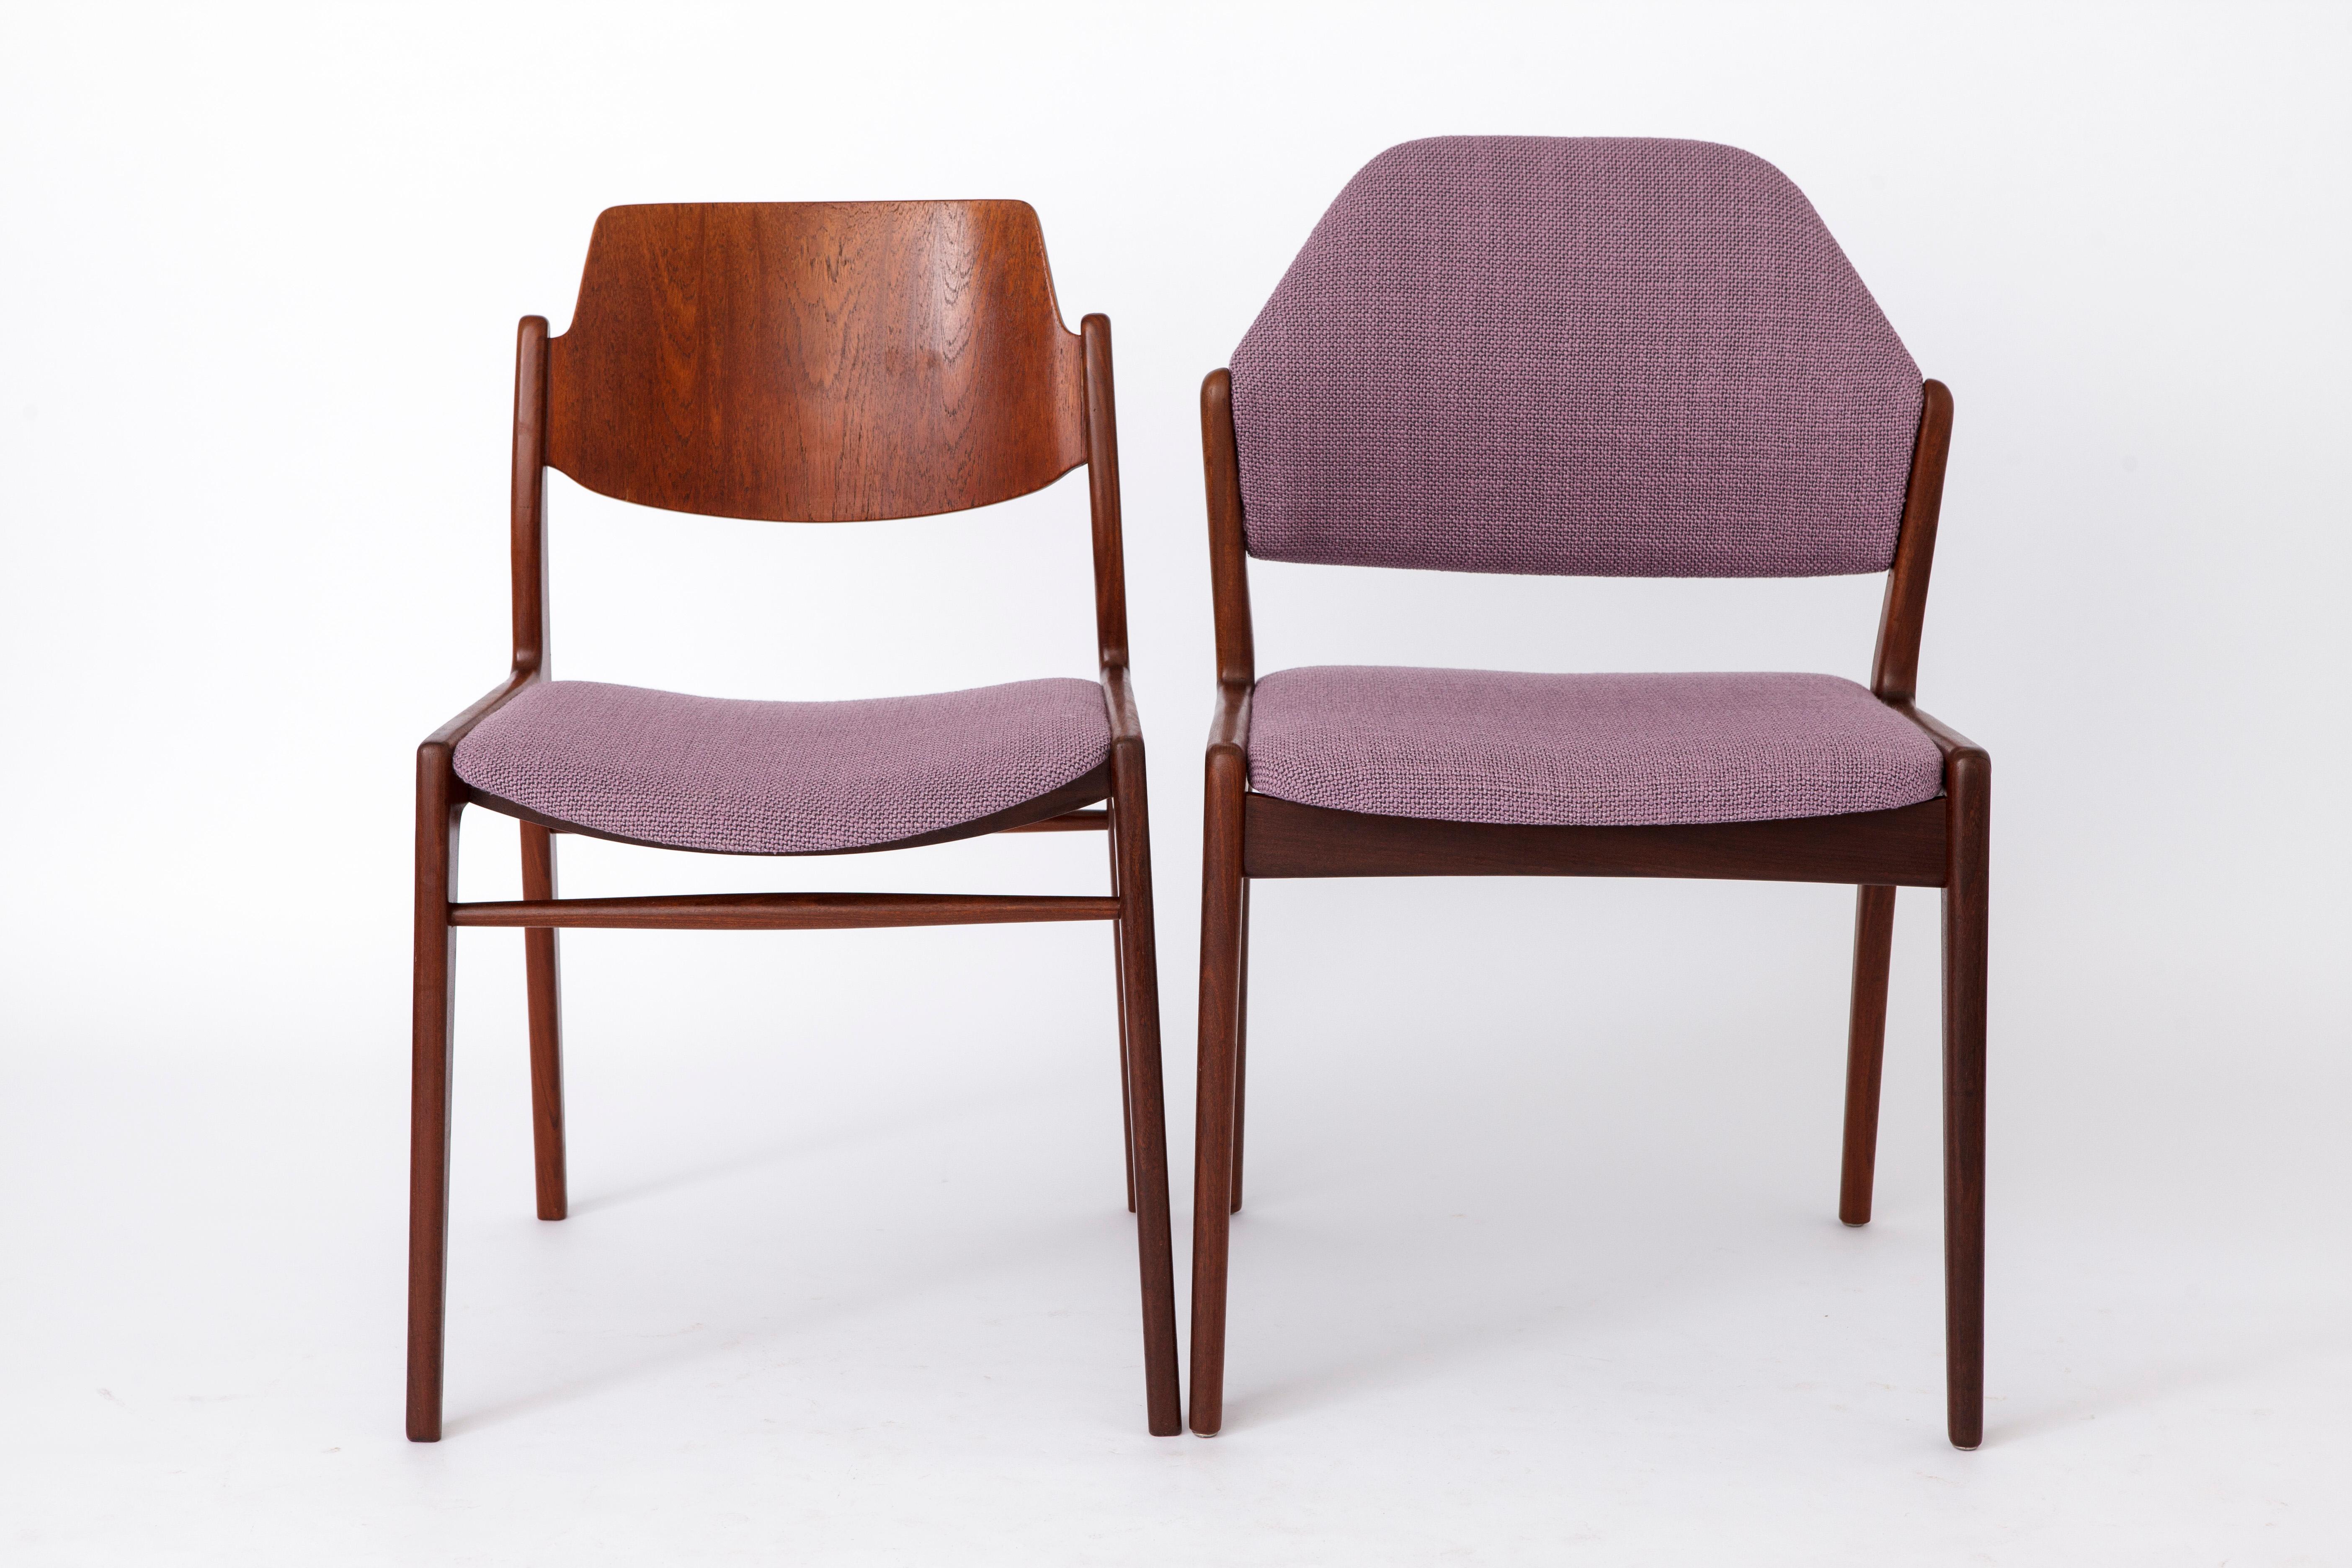 Paire de chaises Vintage par le fabricant allemand Wilkhahn dans les années 1960. 
L'entreprise existe toujours aujourd'hui et se concentre davantage sur le mobilier de bureau. 
Design/One, Allemagne. 
Le prix affiché est pour les deux chaises.